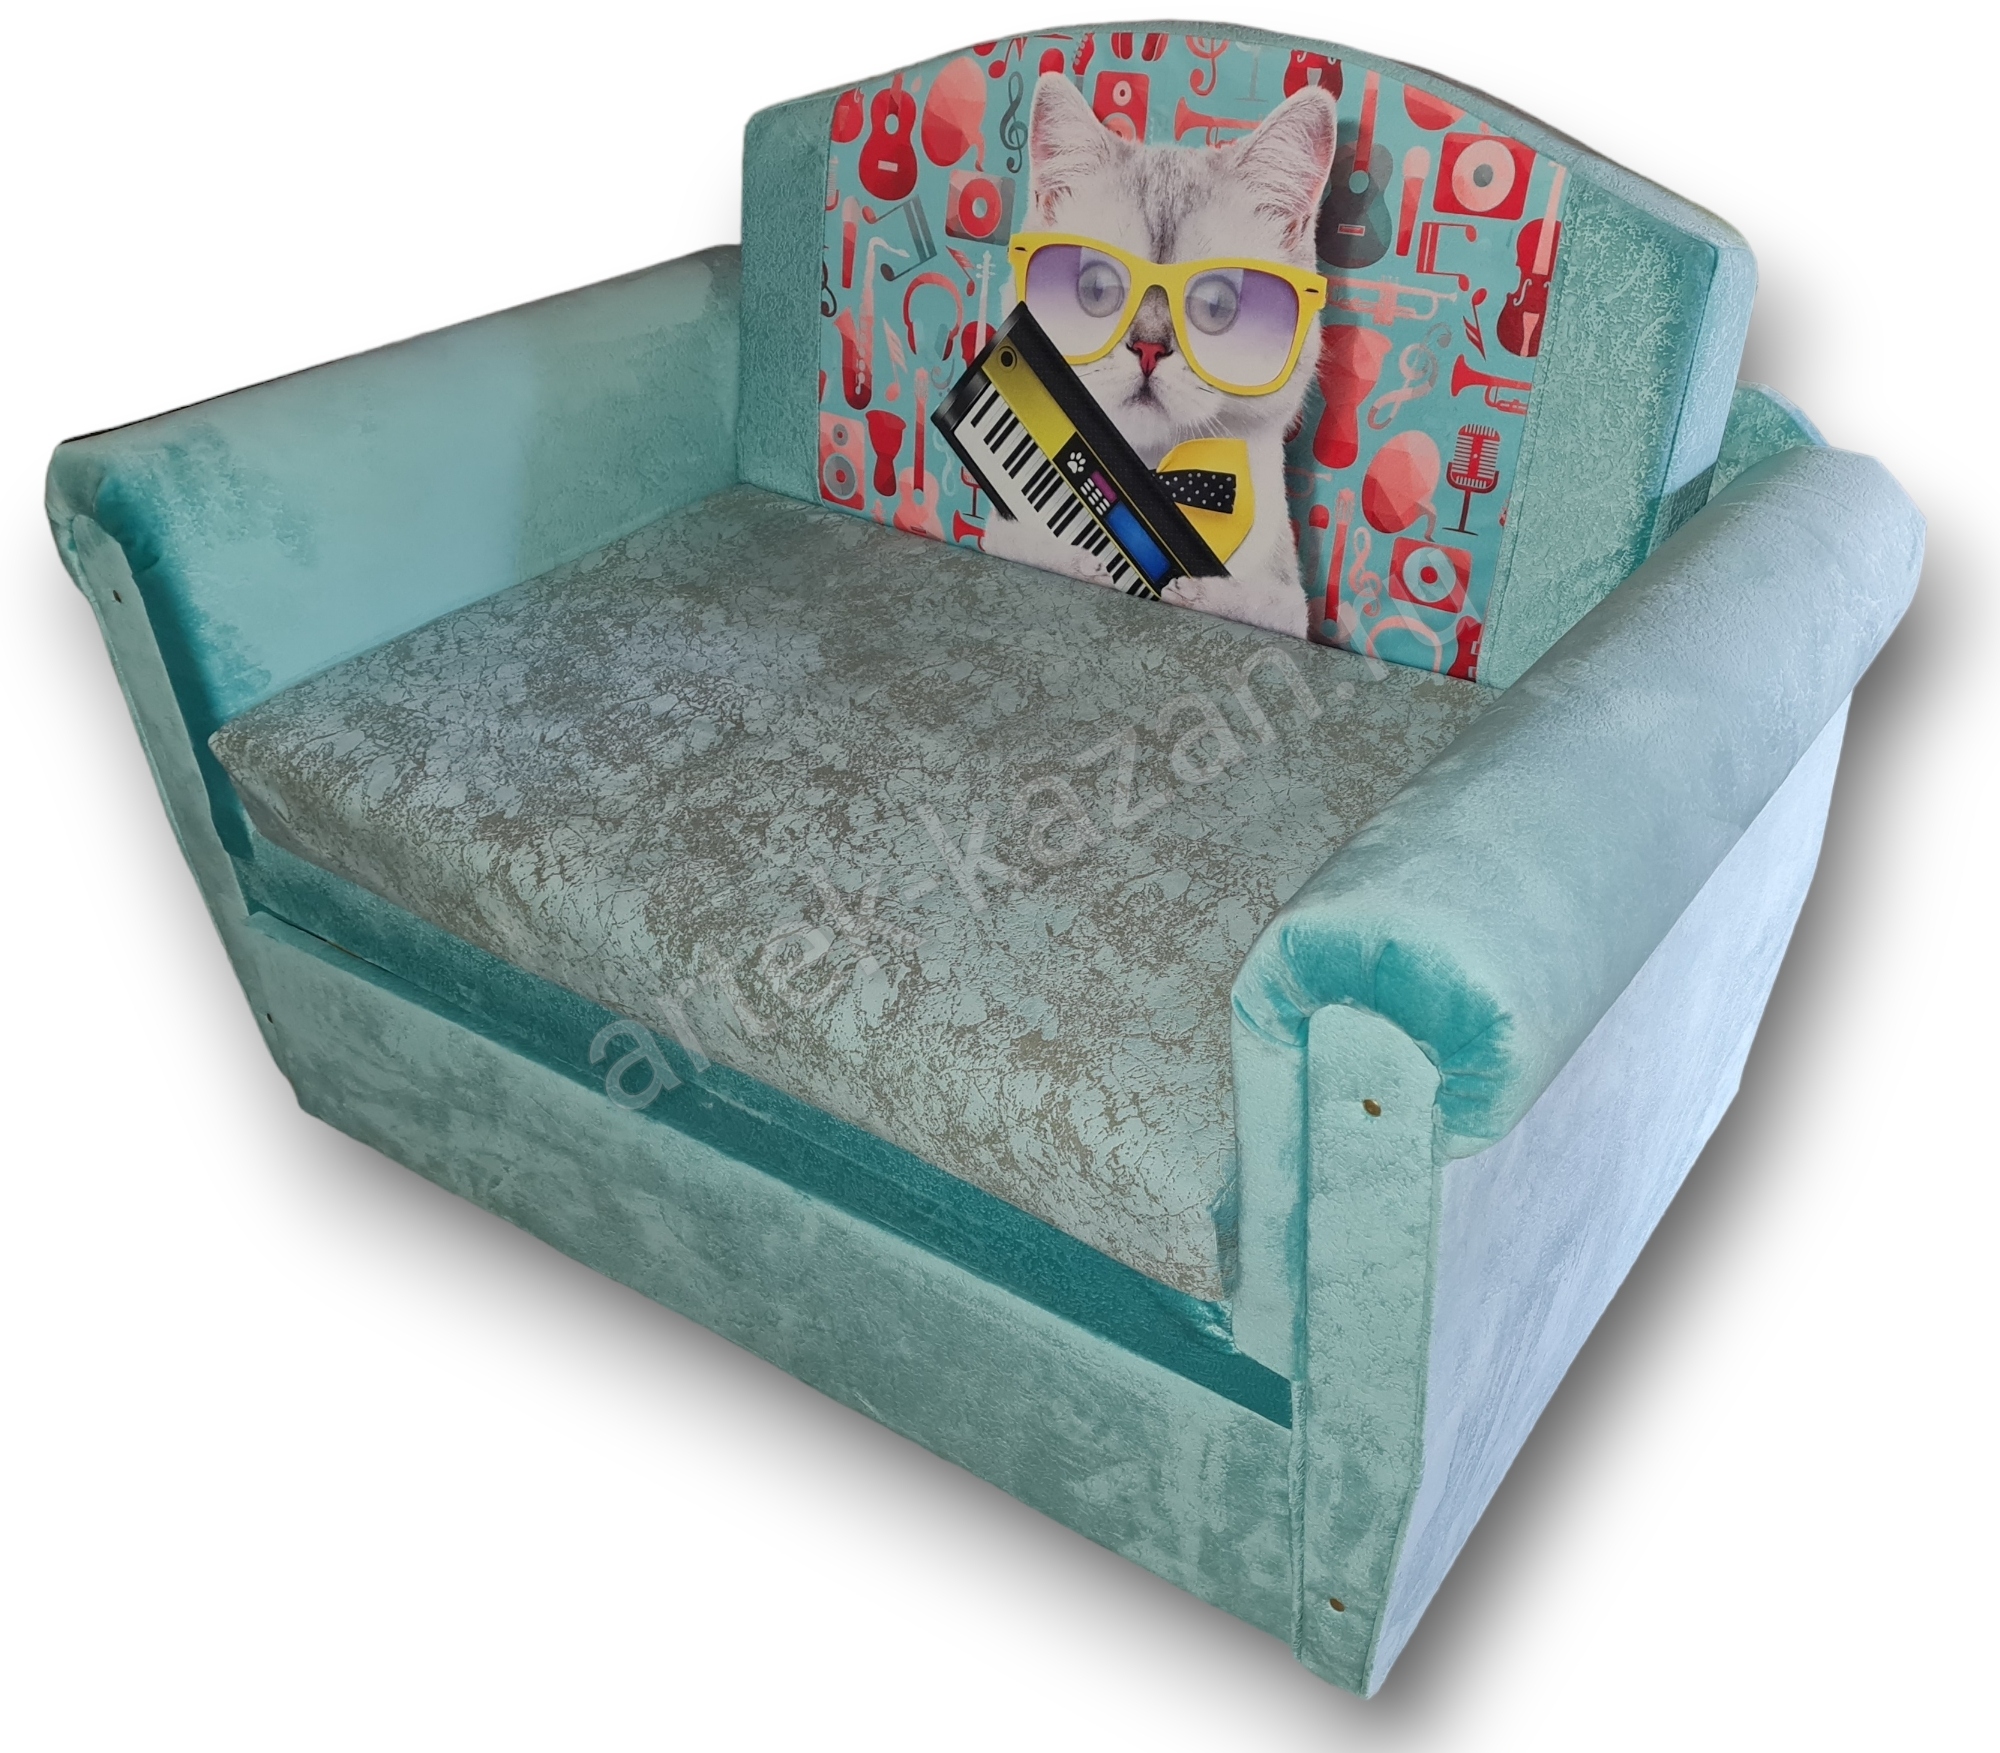 впередвыкатной диван Лика фото № 7. Купить недорогой диван по низкой цене от производителя можно у нас.